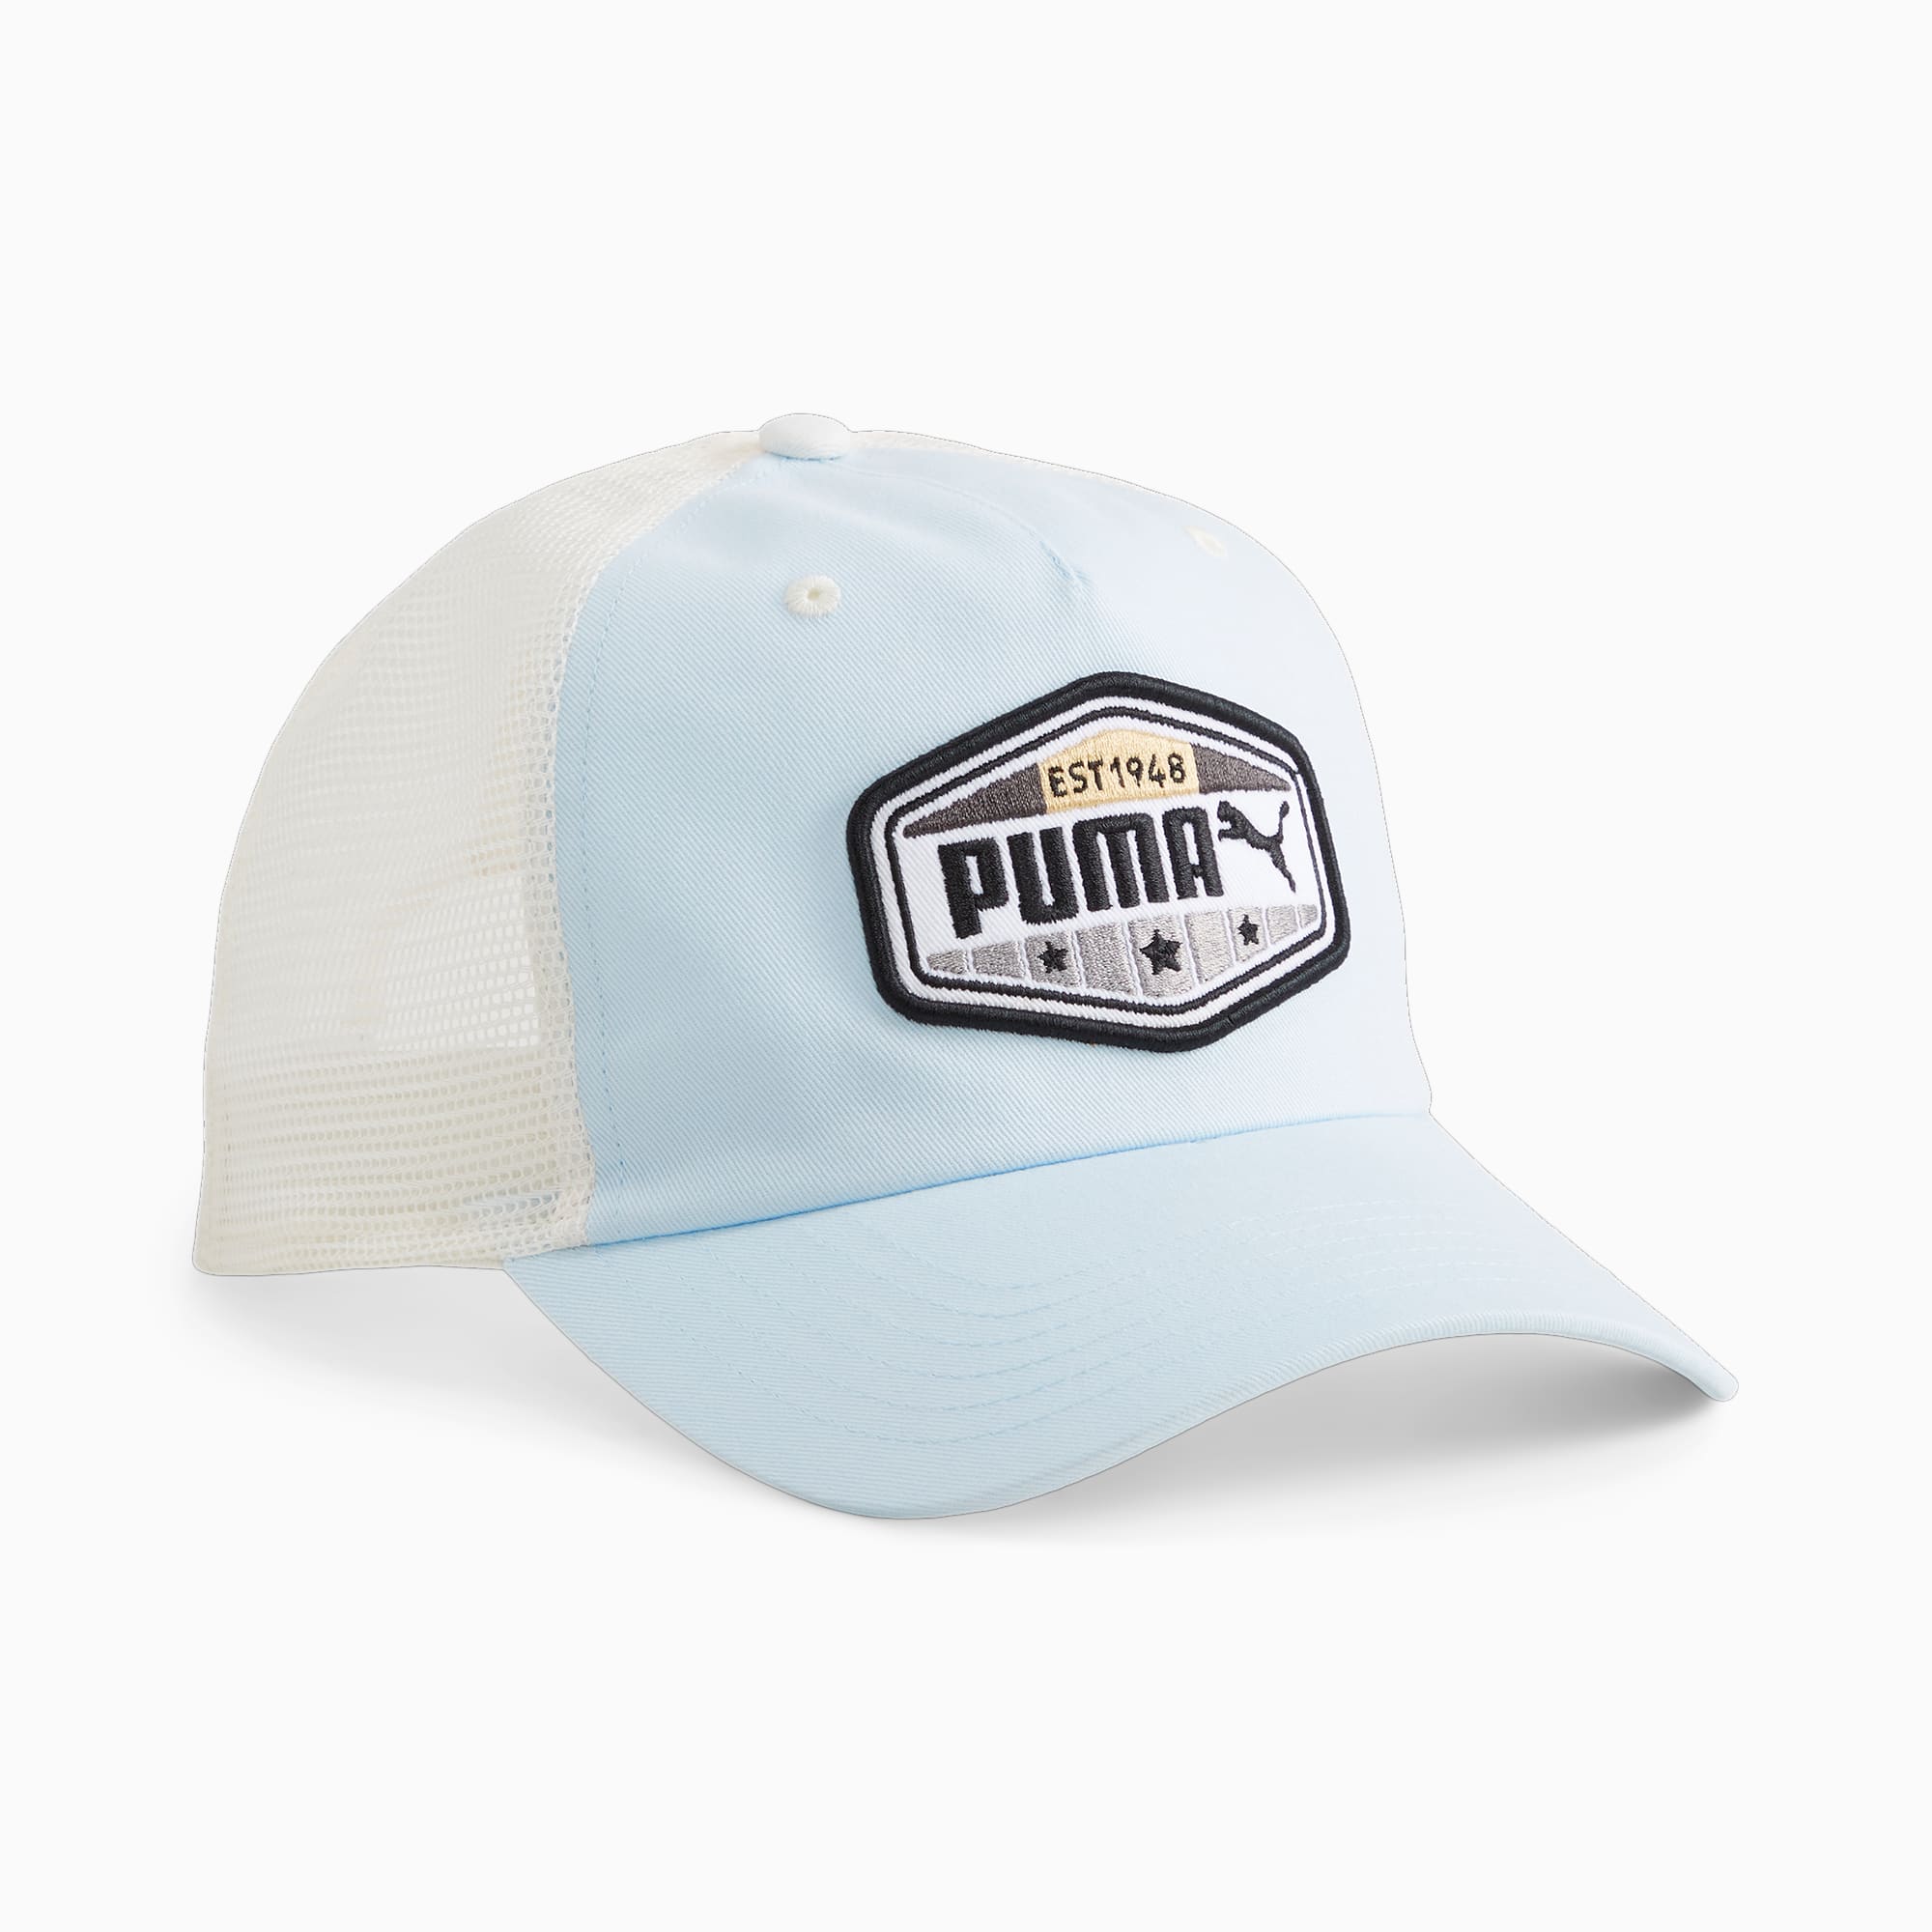 PUMA Trucker Cap Für Herren, Blau/Weiß, Accessoires